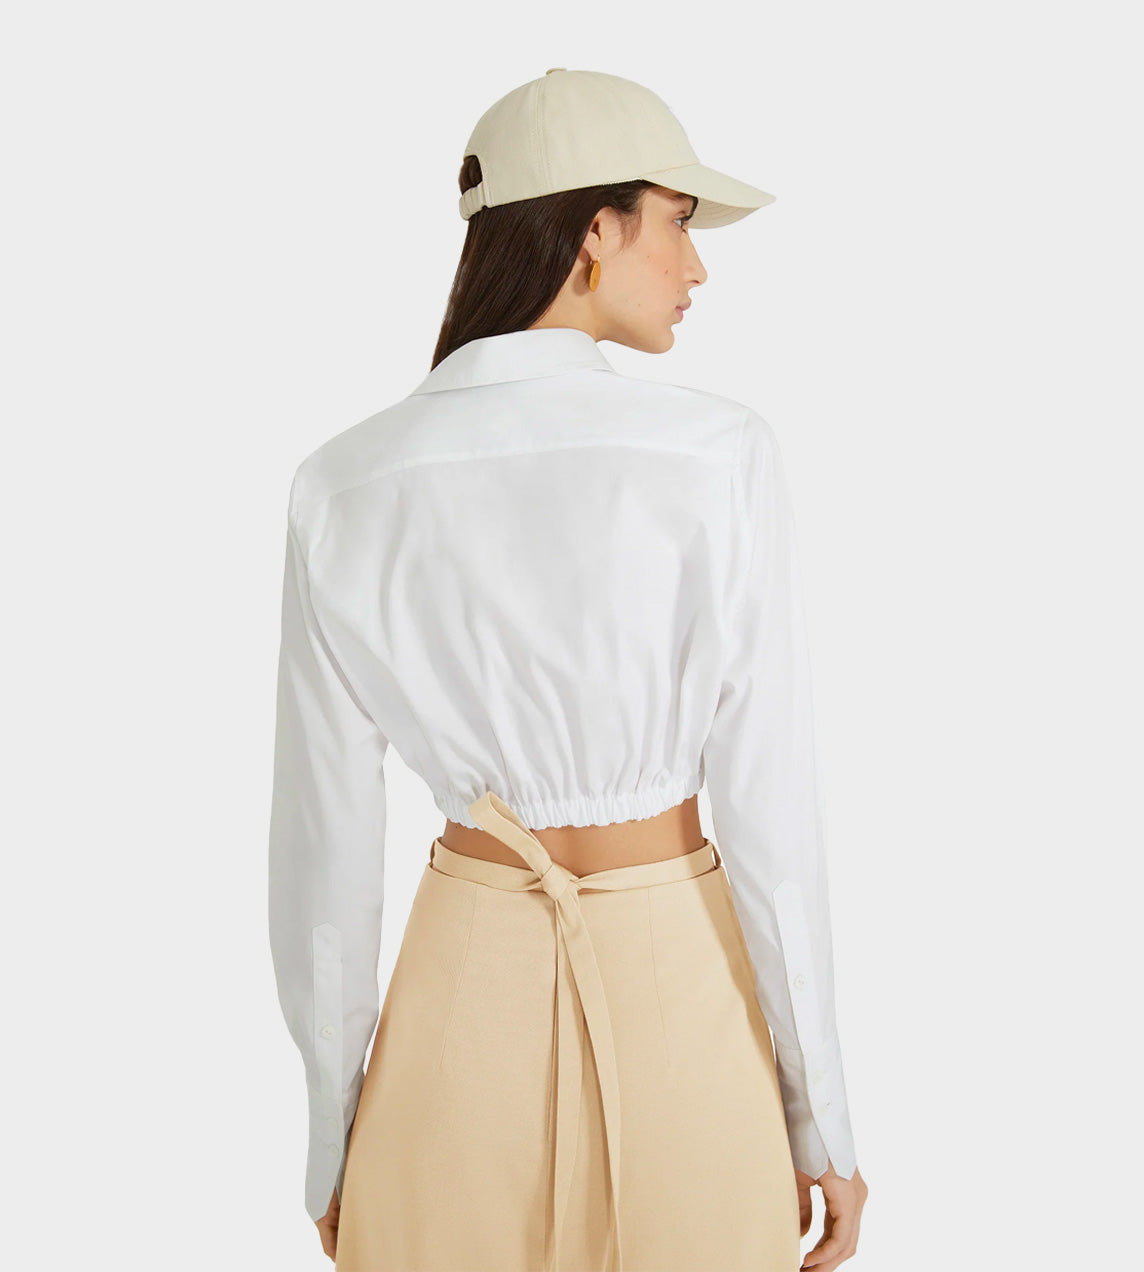 Patou - Cropped Bow Shirt White